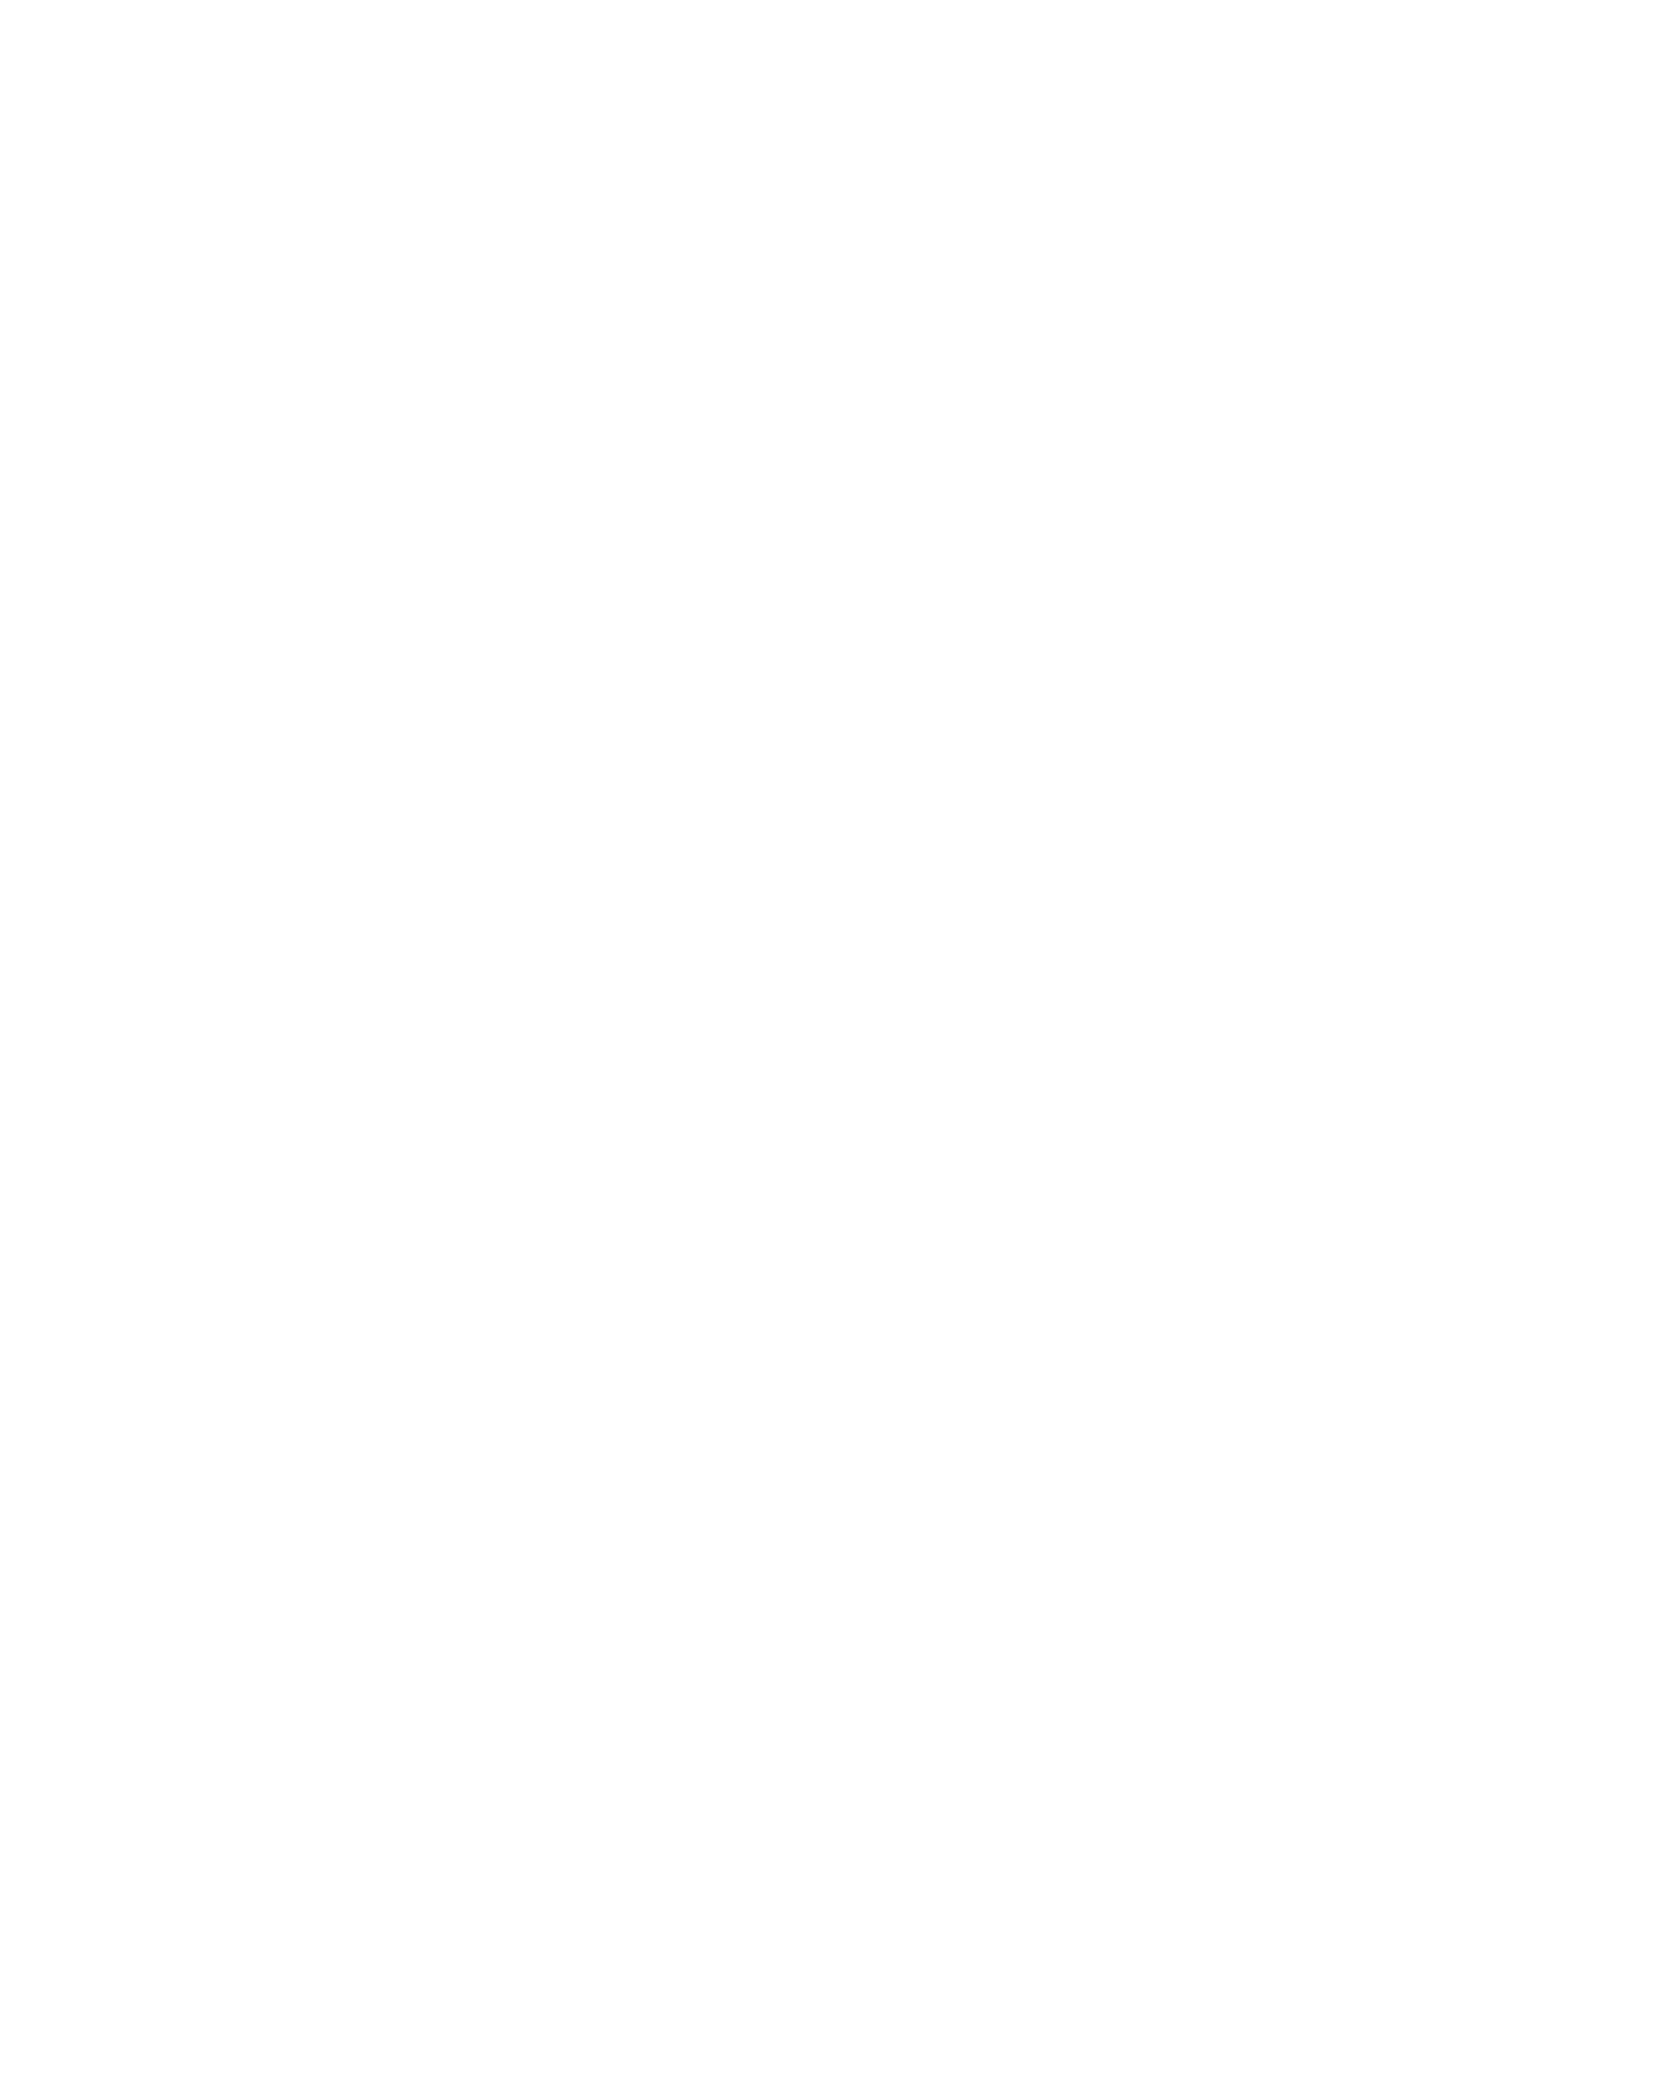  Владимир Игошев. Портрет женщины ханты. 1962. Новокузнецкий художественный музей, Новокузнецк